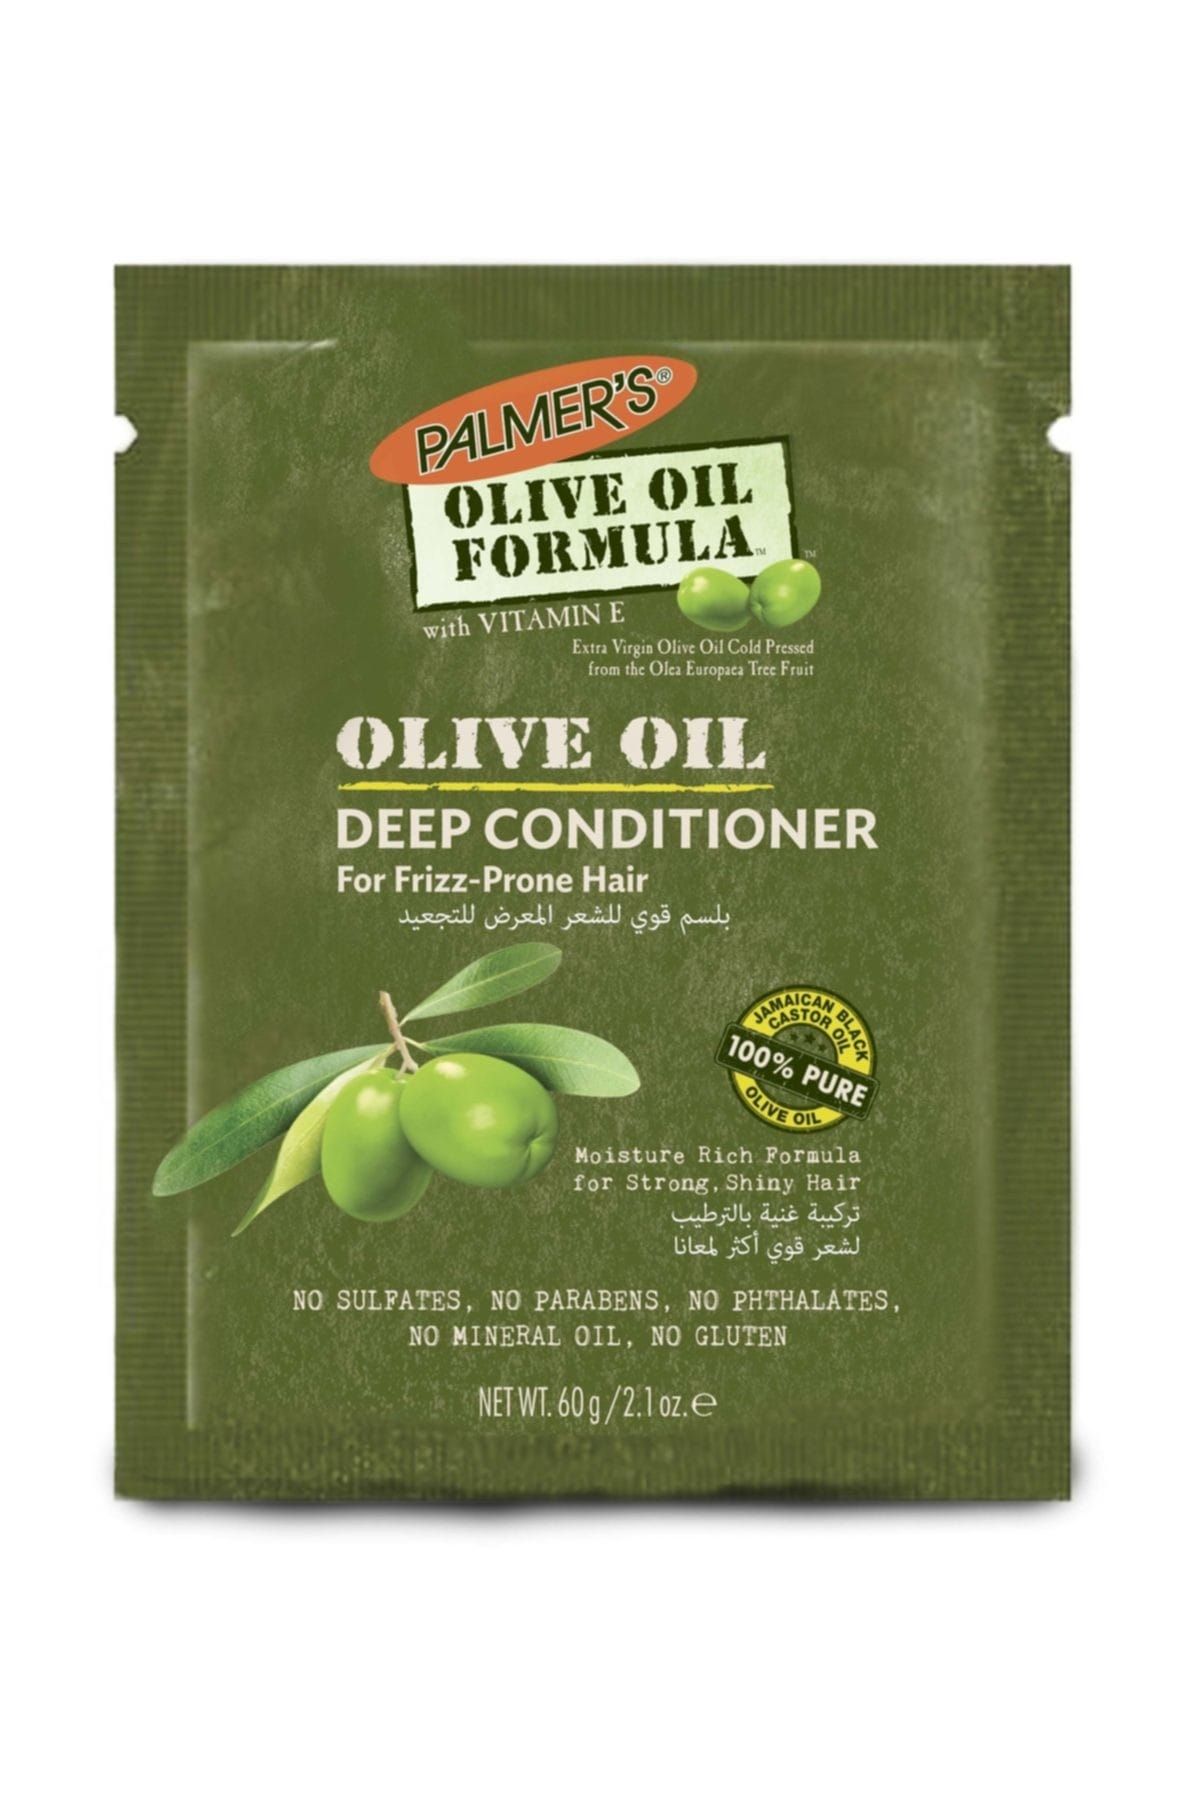 PALMER'S Yıpranmış Saçlar İçin Saç Bakım Maskesi - Palmers Olive Oil Formula Conditioner 60 g 010181025150